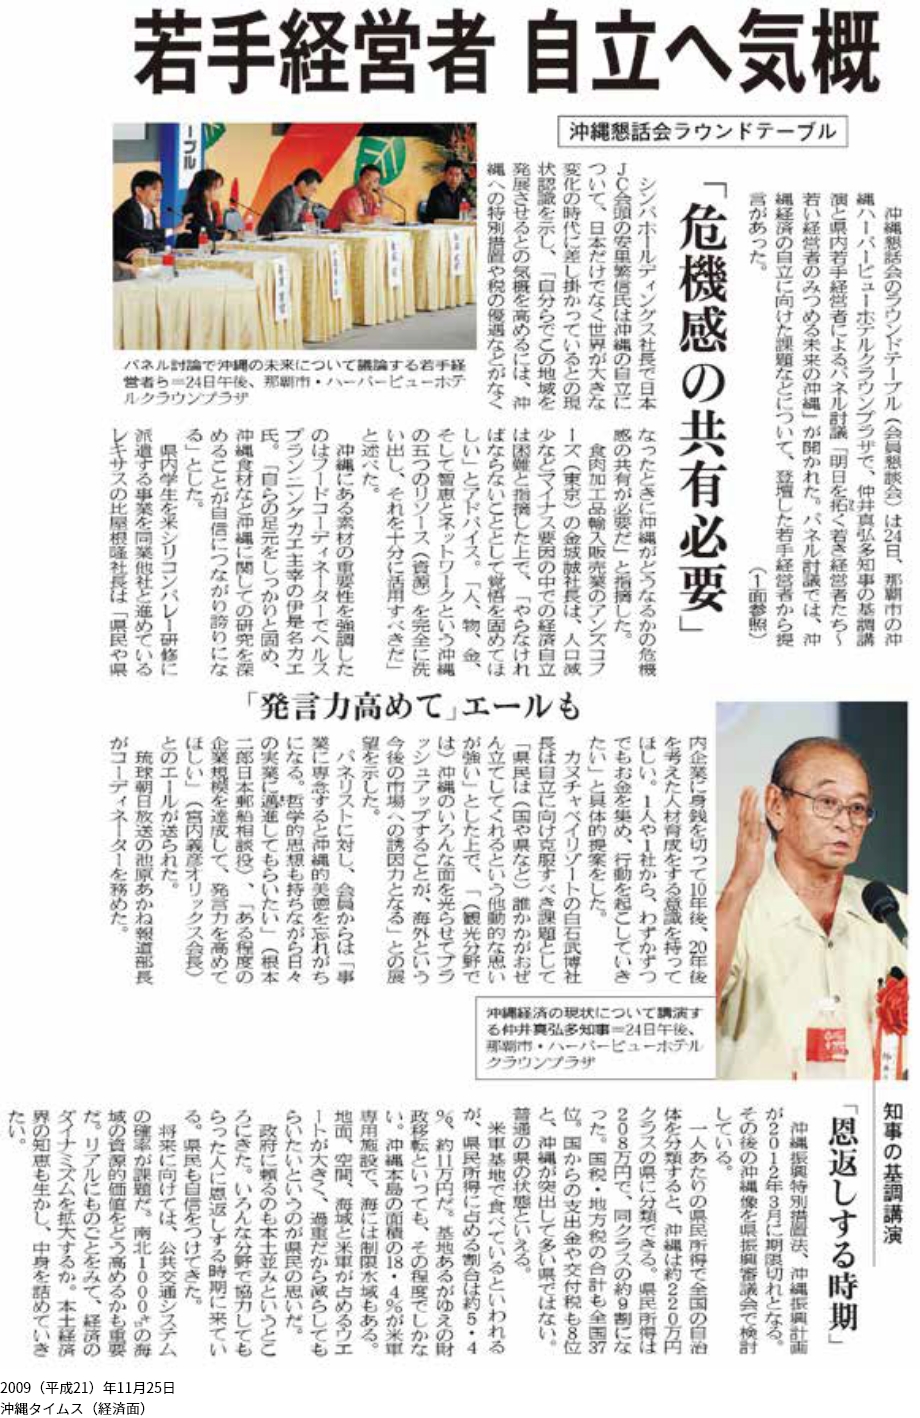 2009(平成21)年11月25日沖縄タイムス(経済面)